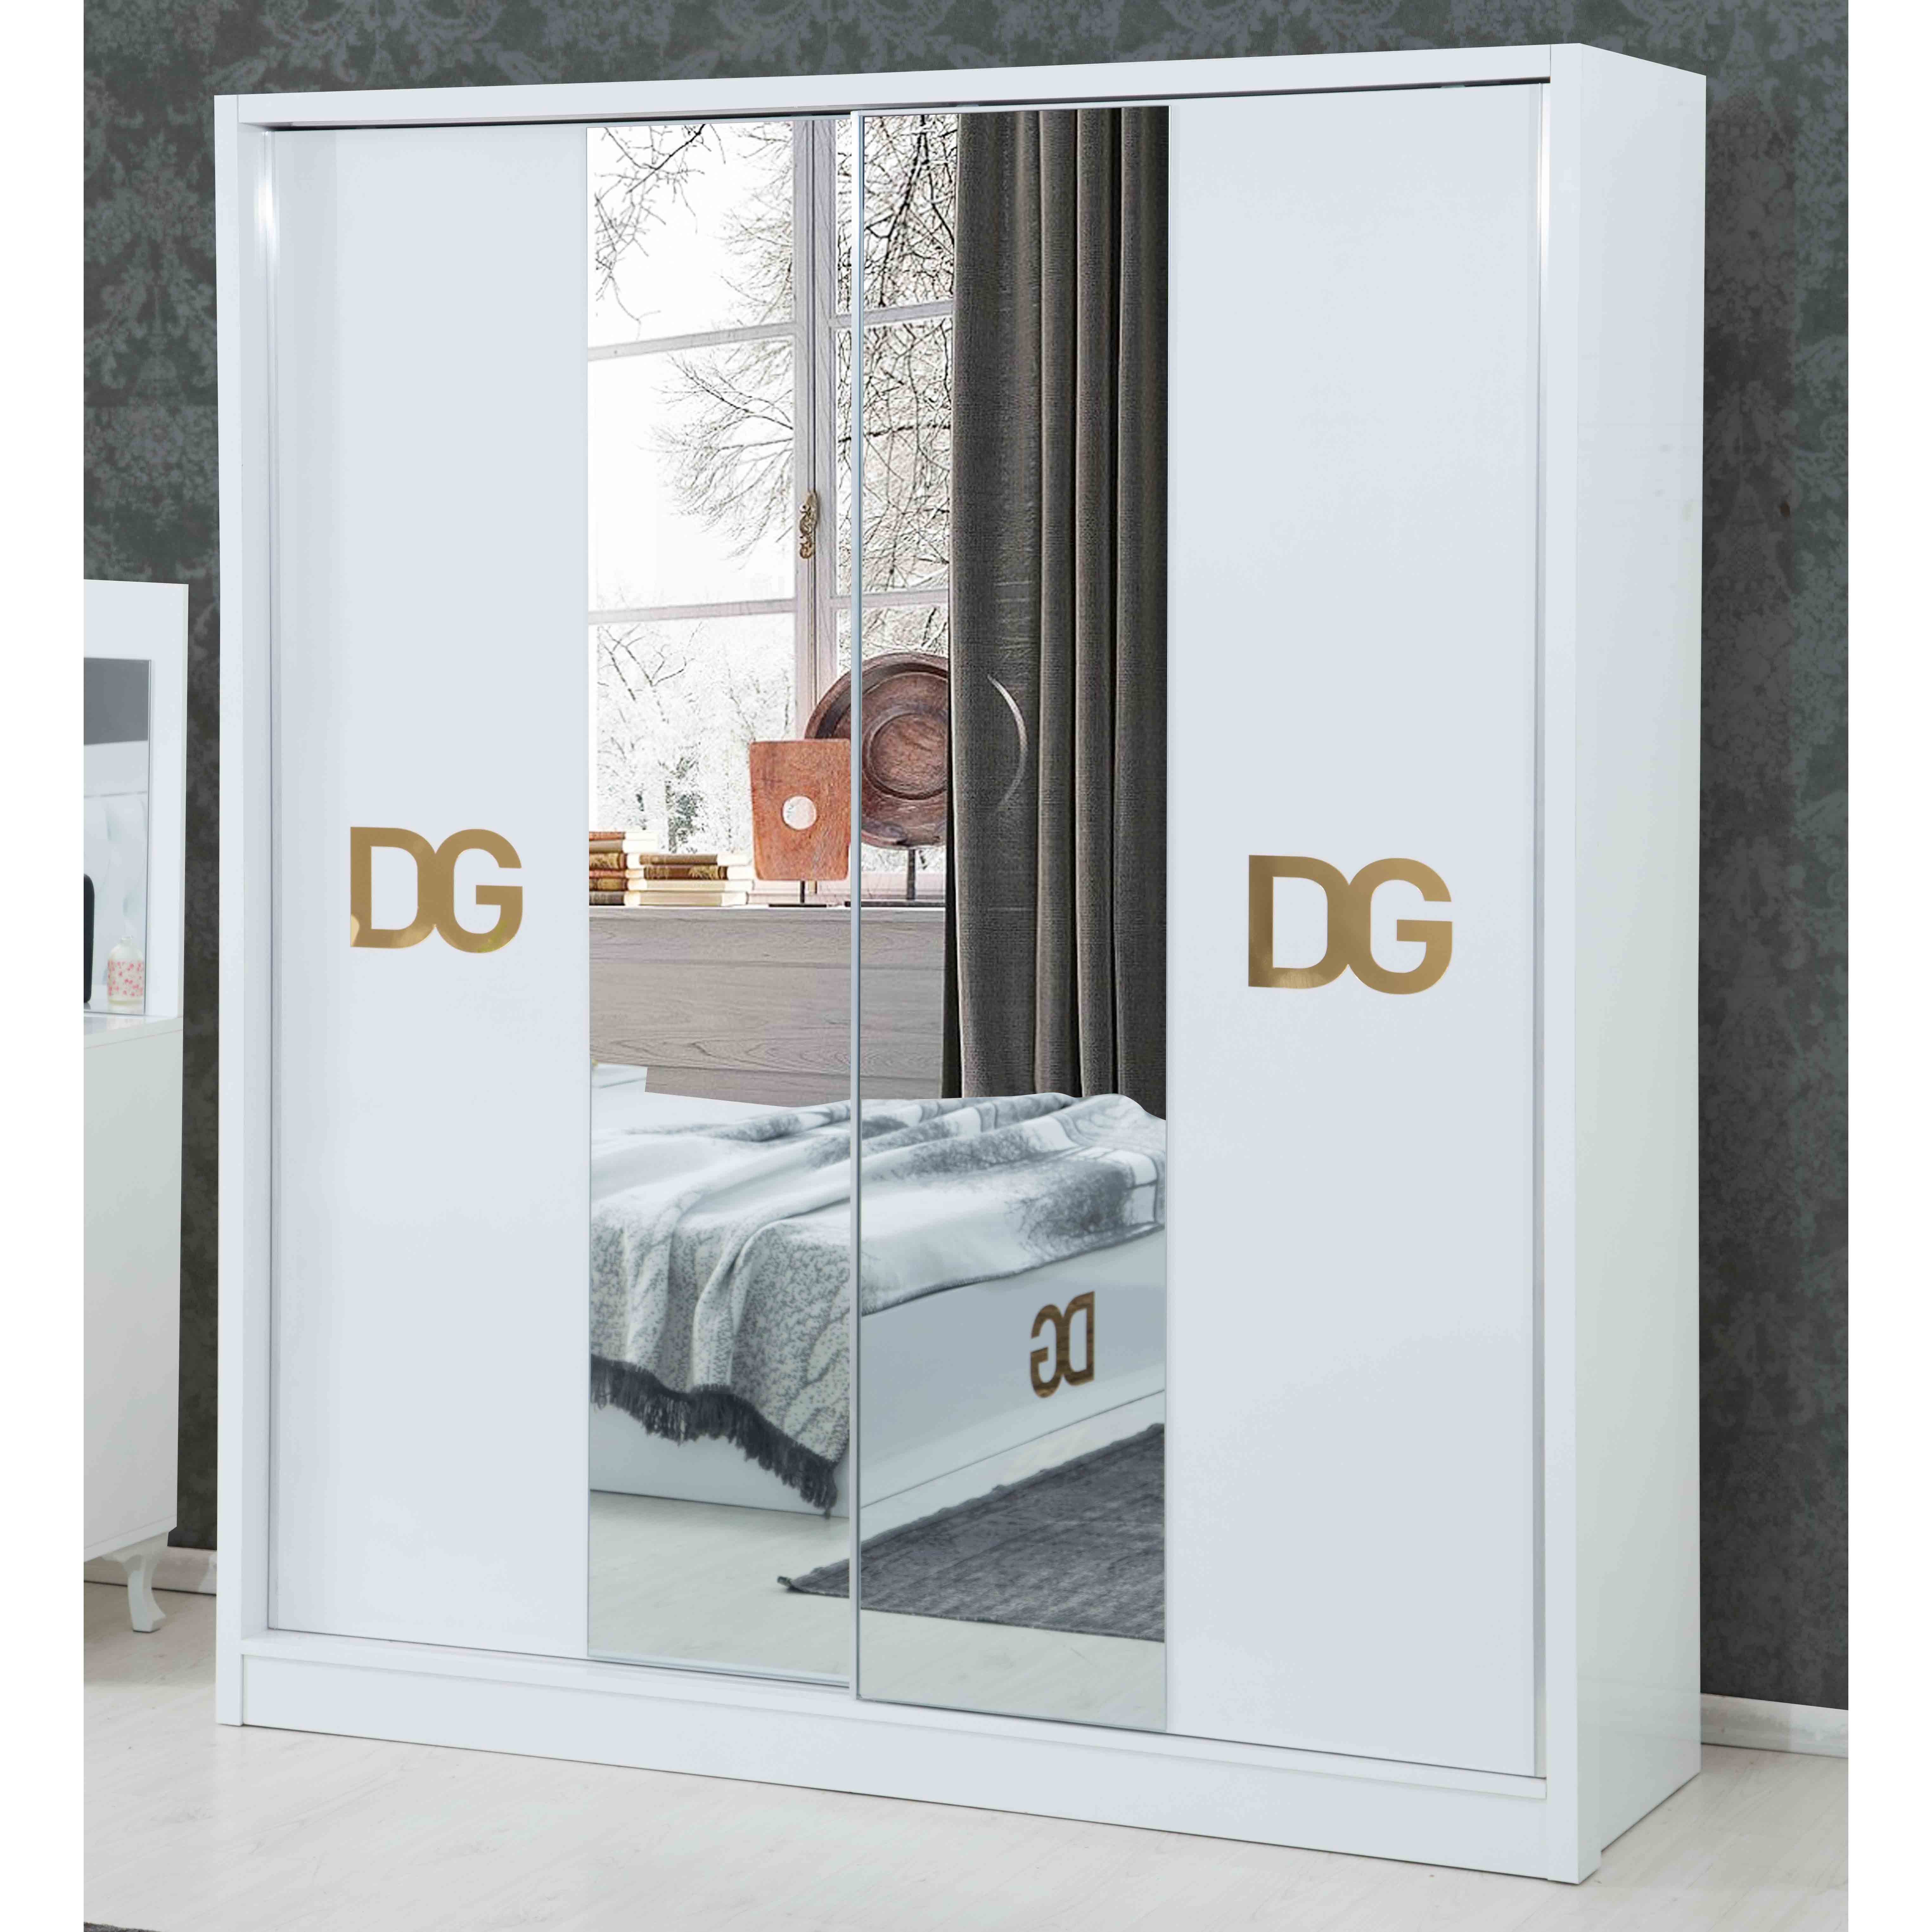 Dg Vol1 Bedroom ( Wardrobe with 180 cm )